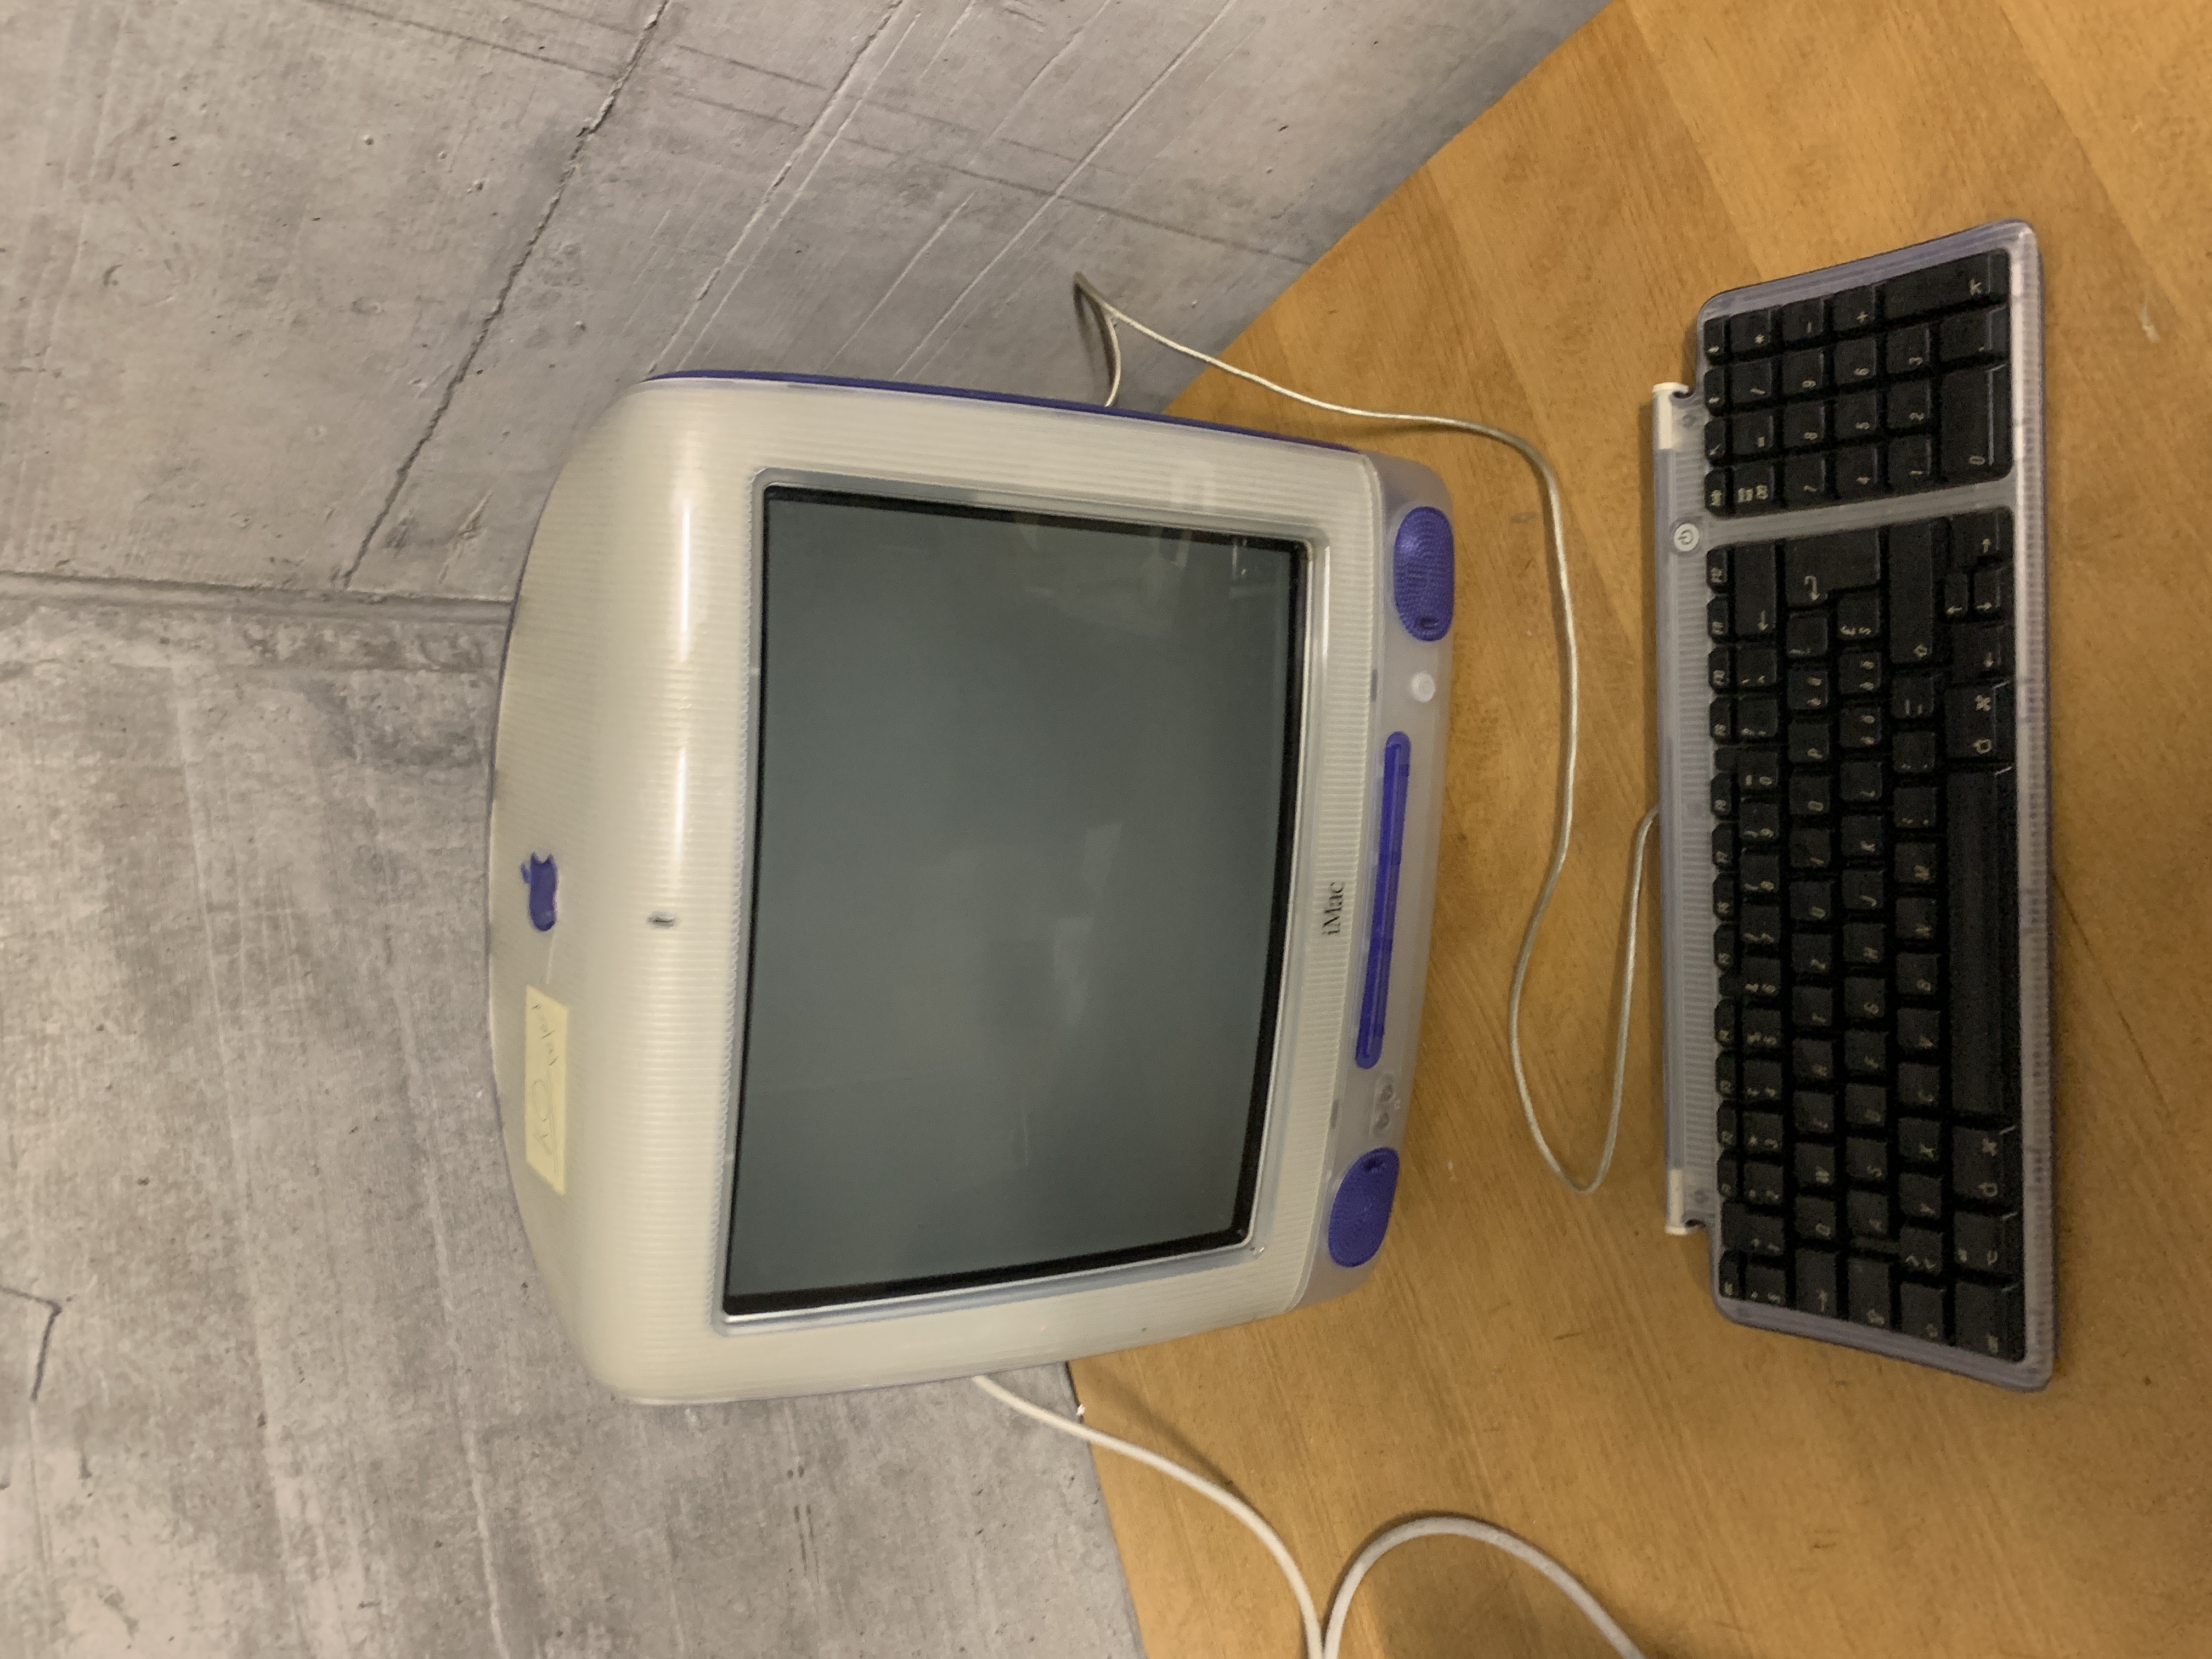 iMac G3 violet